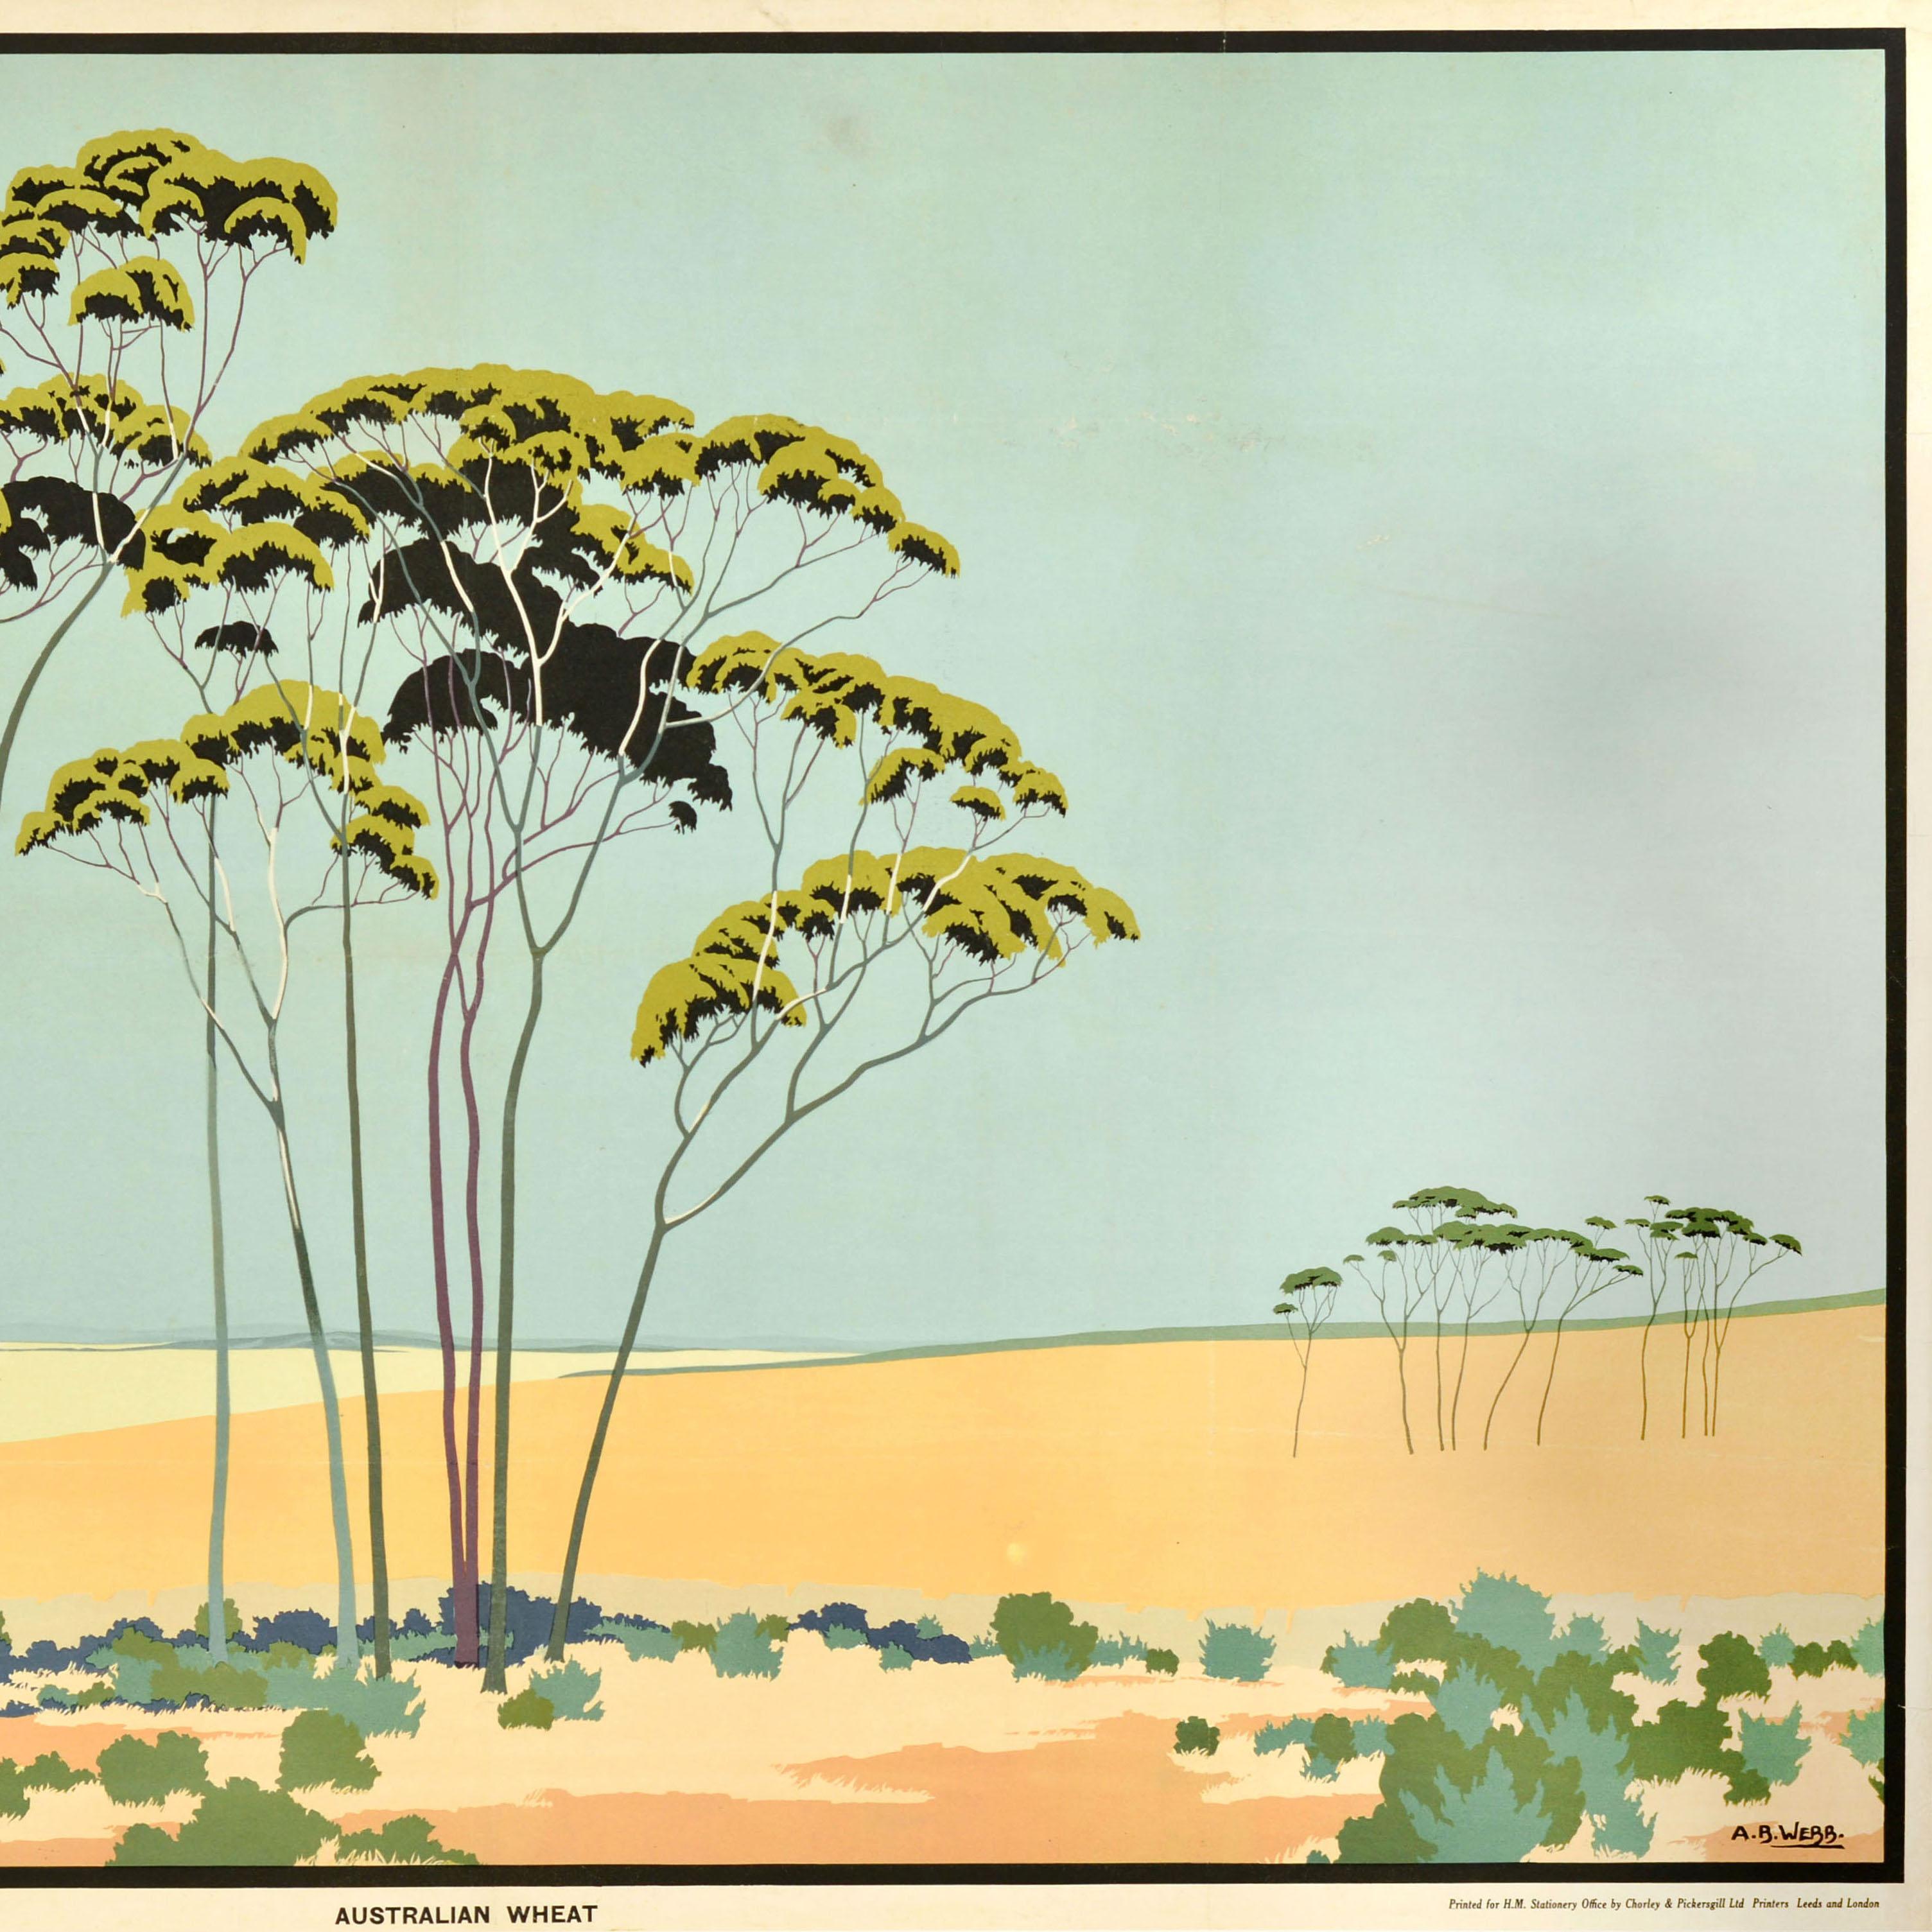 Originales Vintage-Poster - Australian Wheat - herausgegeben vom Empire Marketing Board (EMB 1926-1933) mit einem atemberaubenden Kunstwerk von Archibald Bertram Webb (1887-1944), das eine landwirtschaftliche Ansicht von hohen Bäumen in blassen